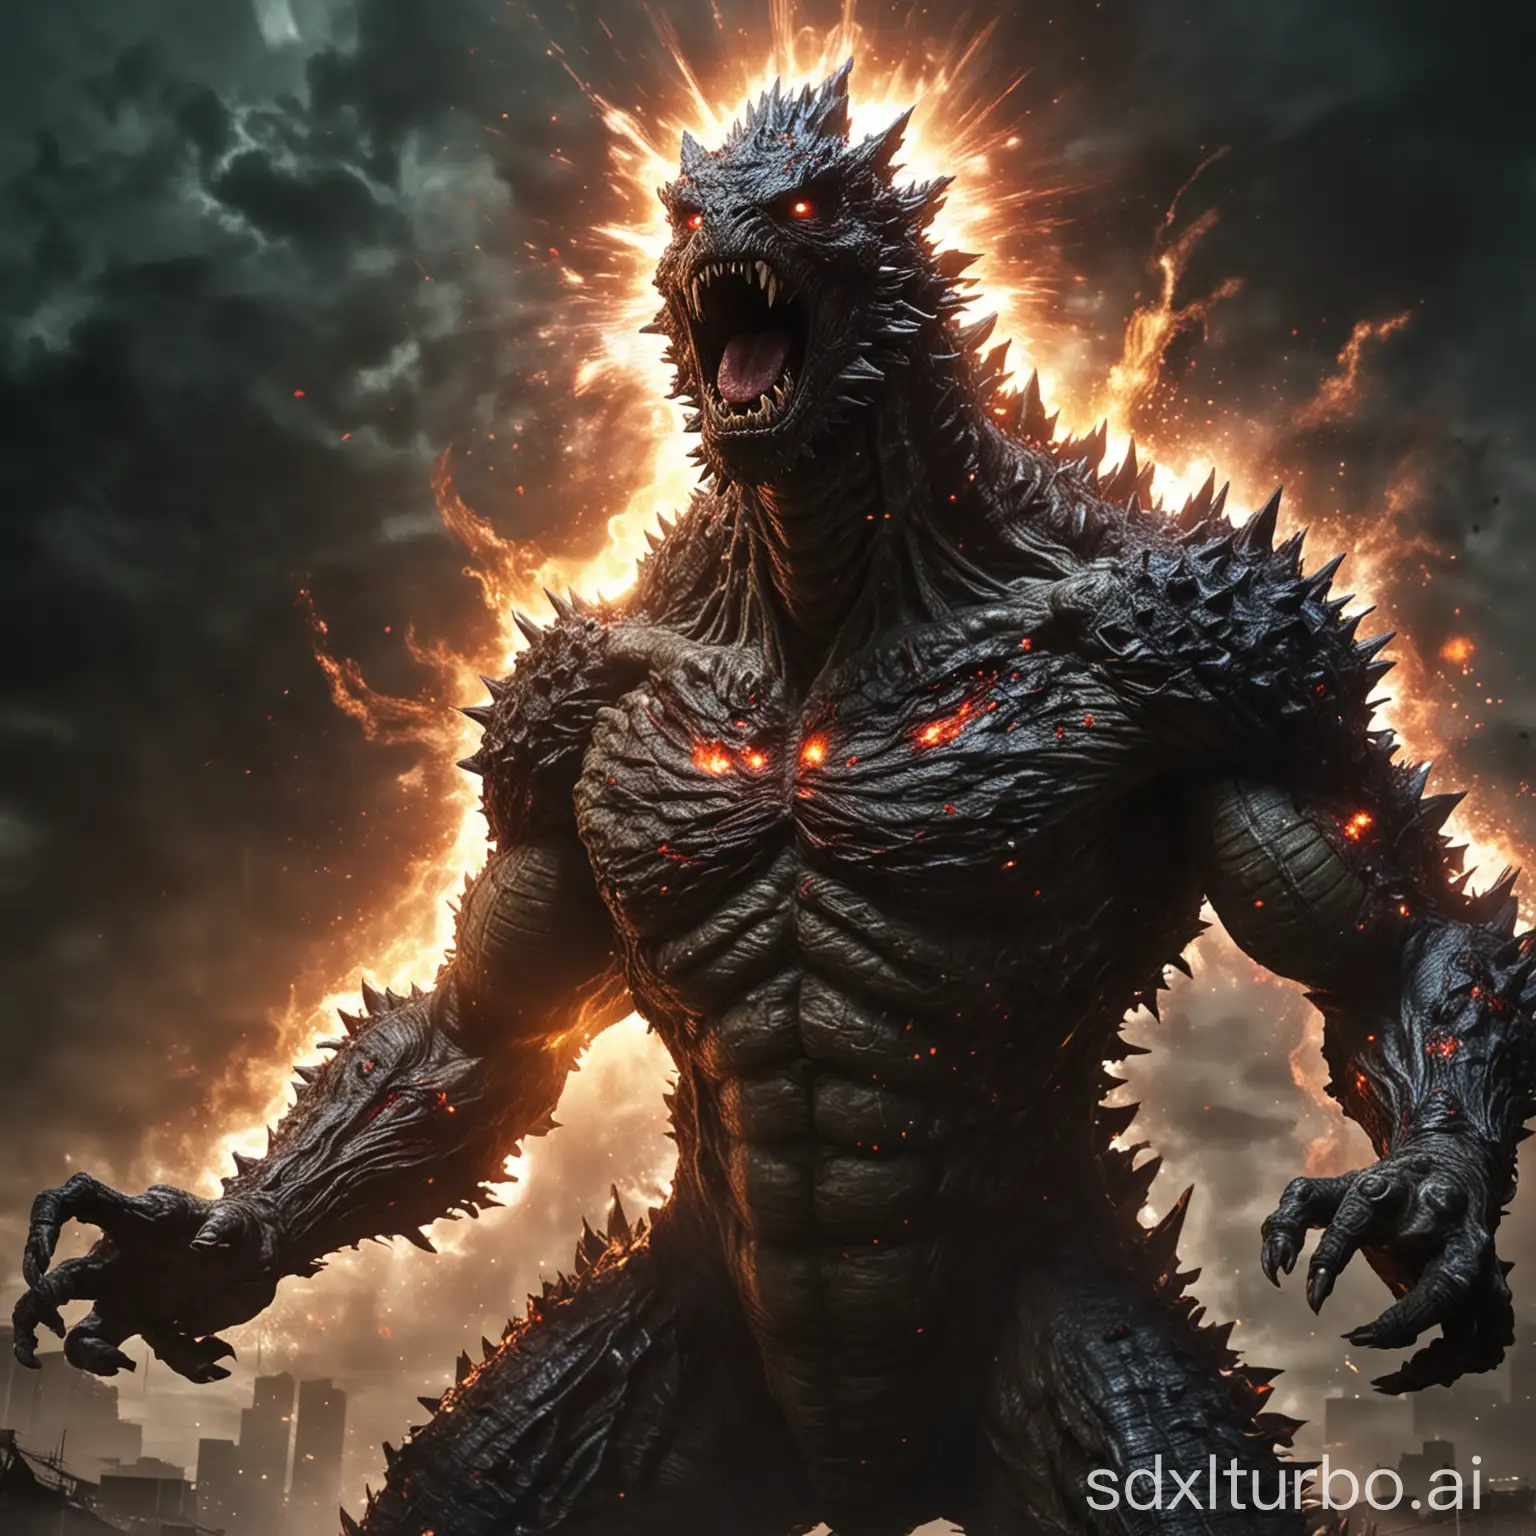 Zombie-Godzilla-Mutant-Super-God-Form-Emitting-Atomic-Flare